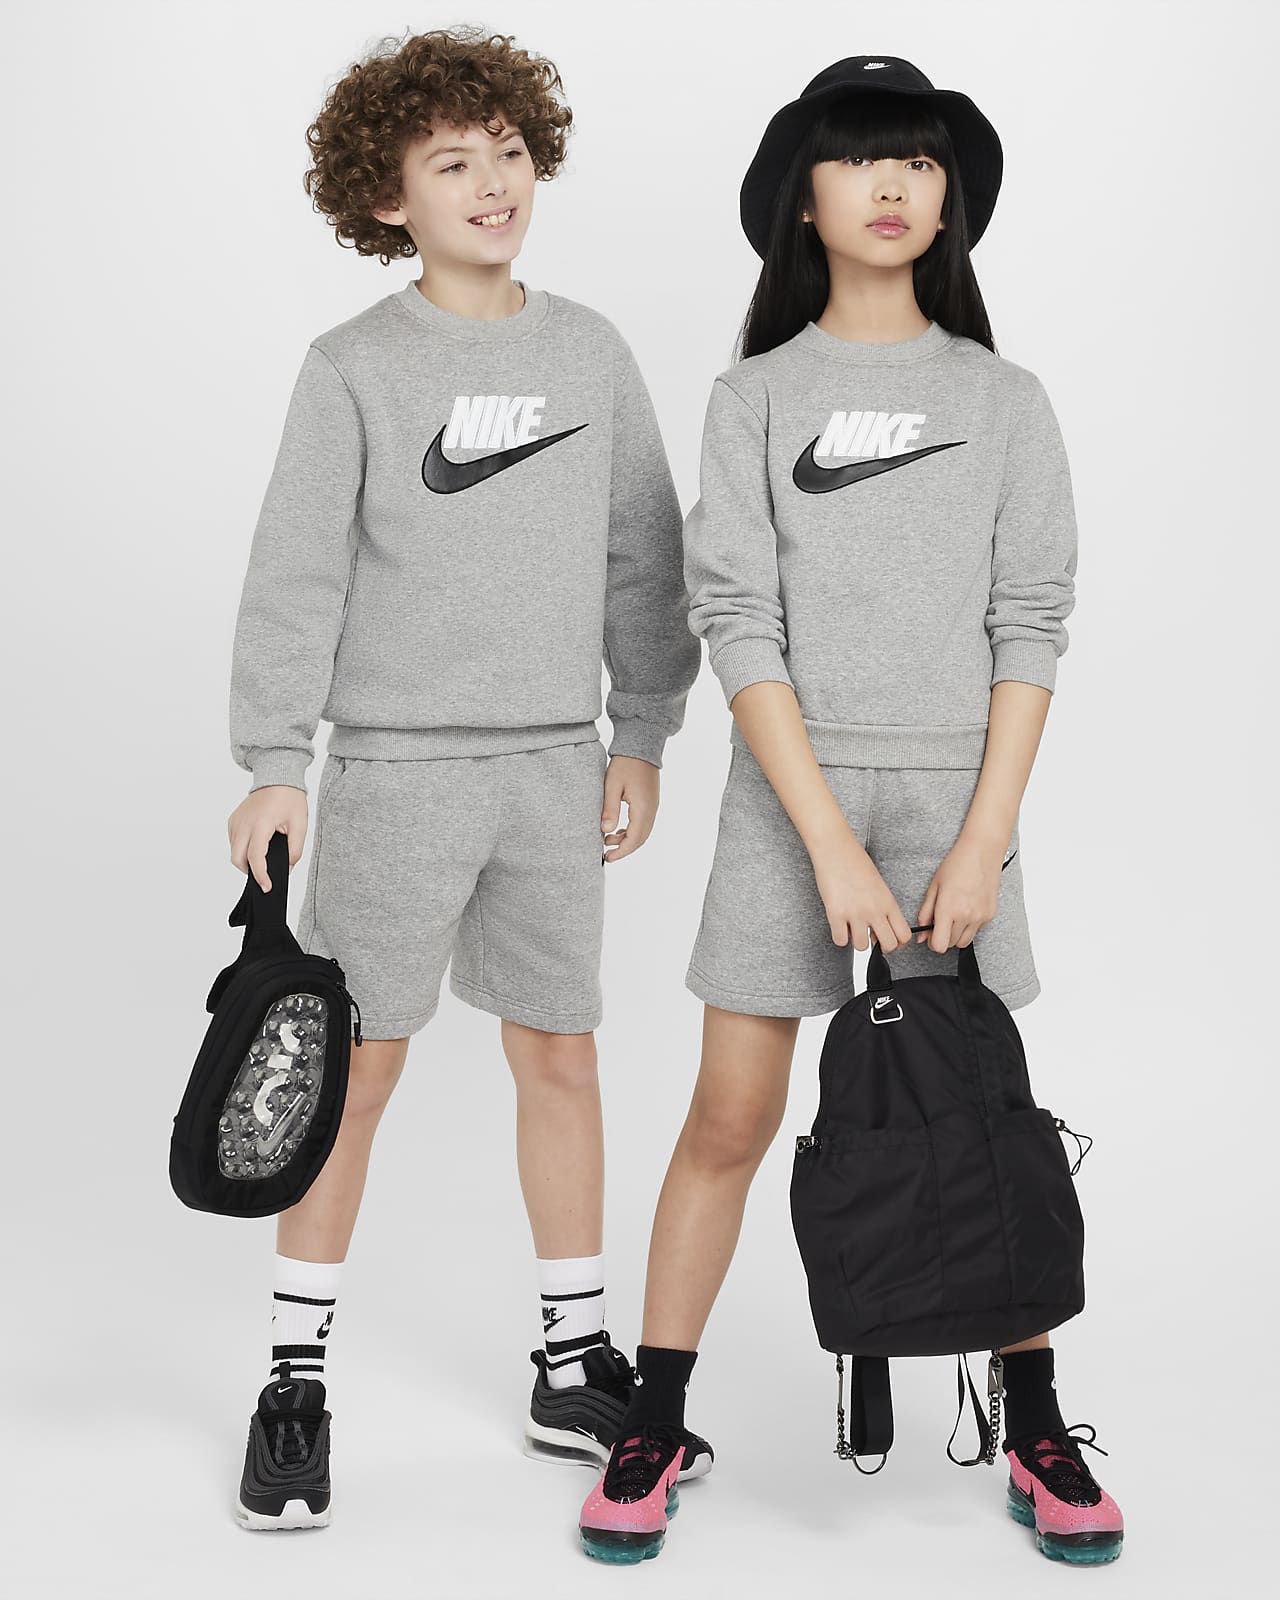 Nike Sportswear Club Fleece Conjunt de pantalons curts de xandall - Nen/a